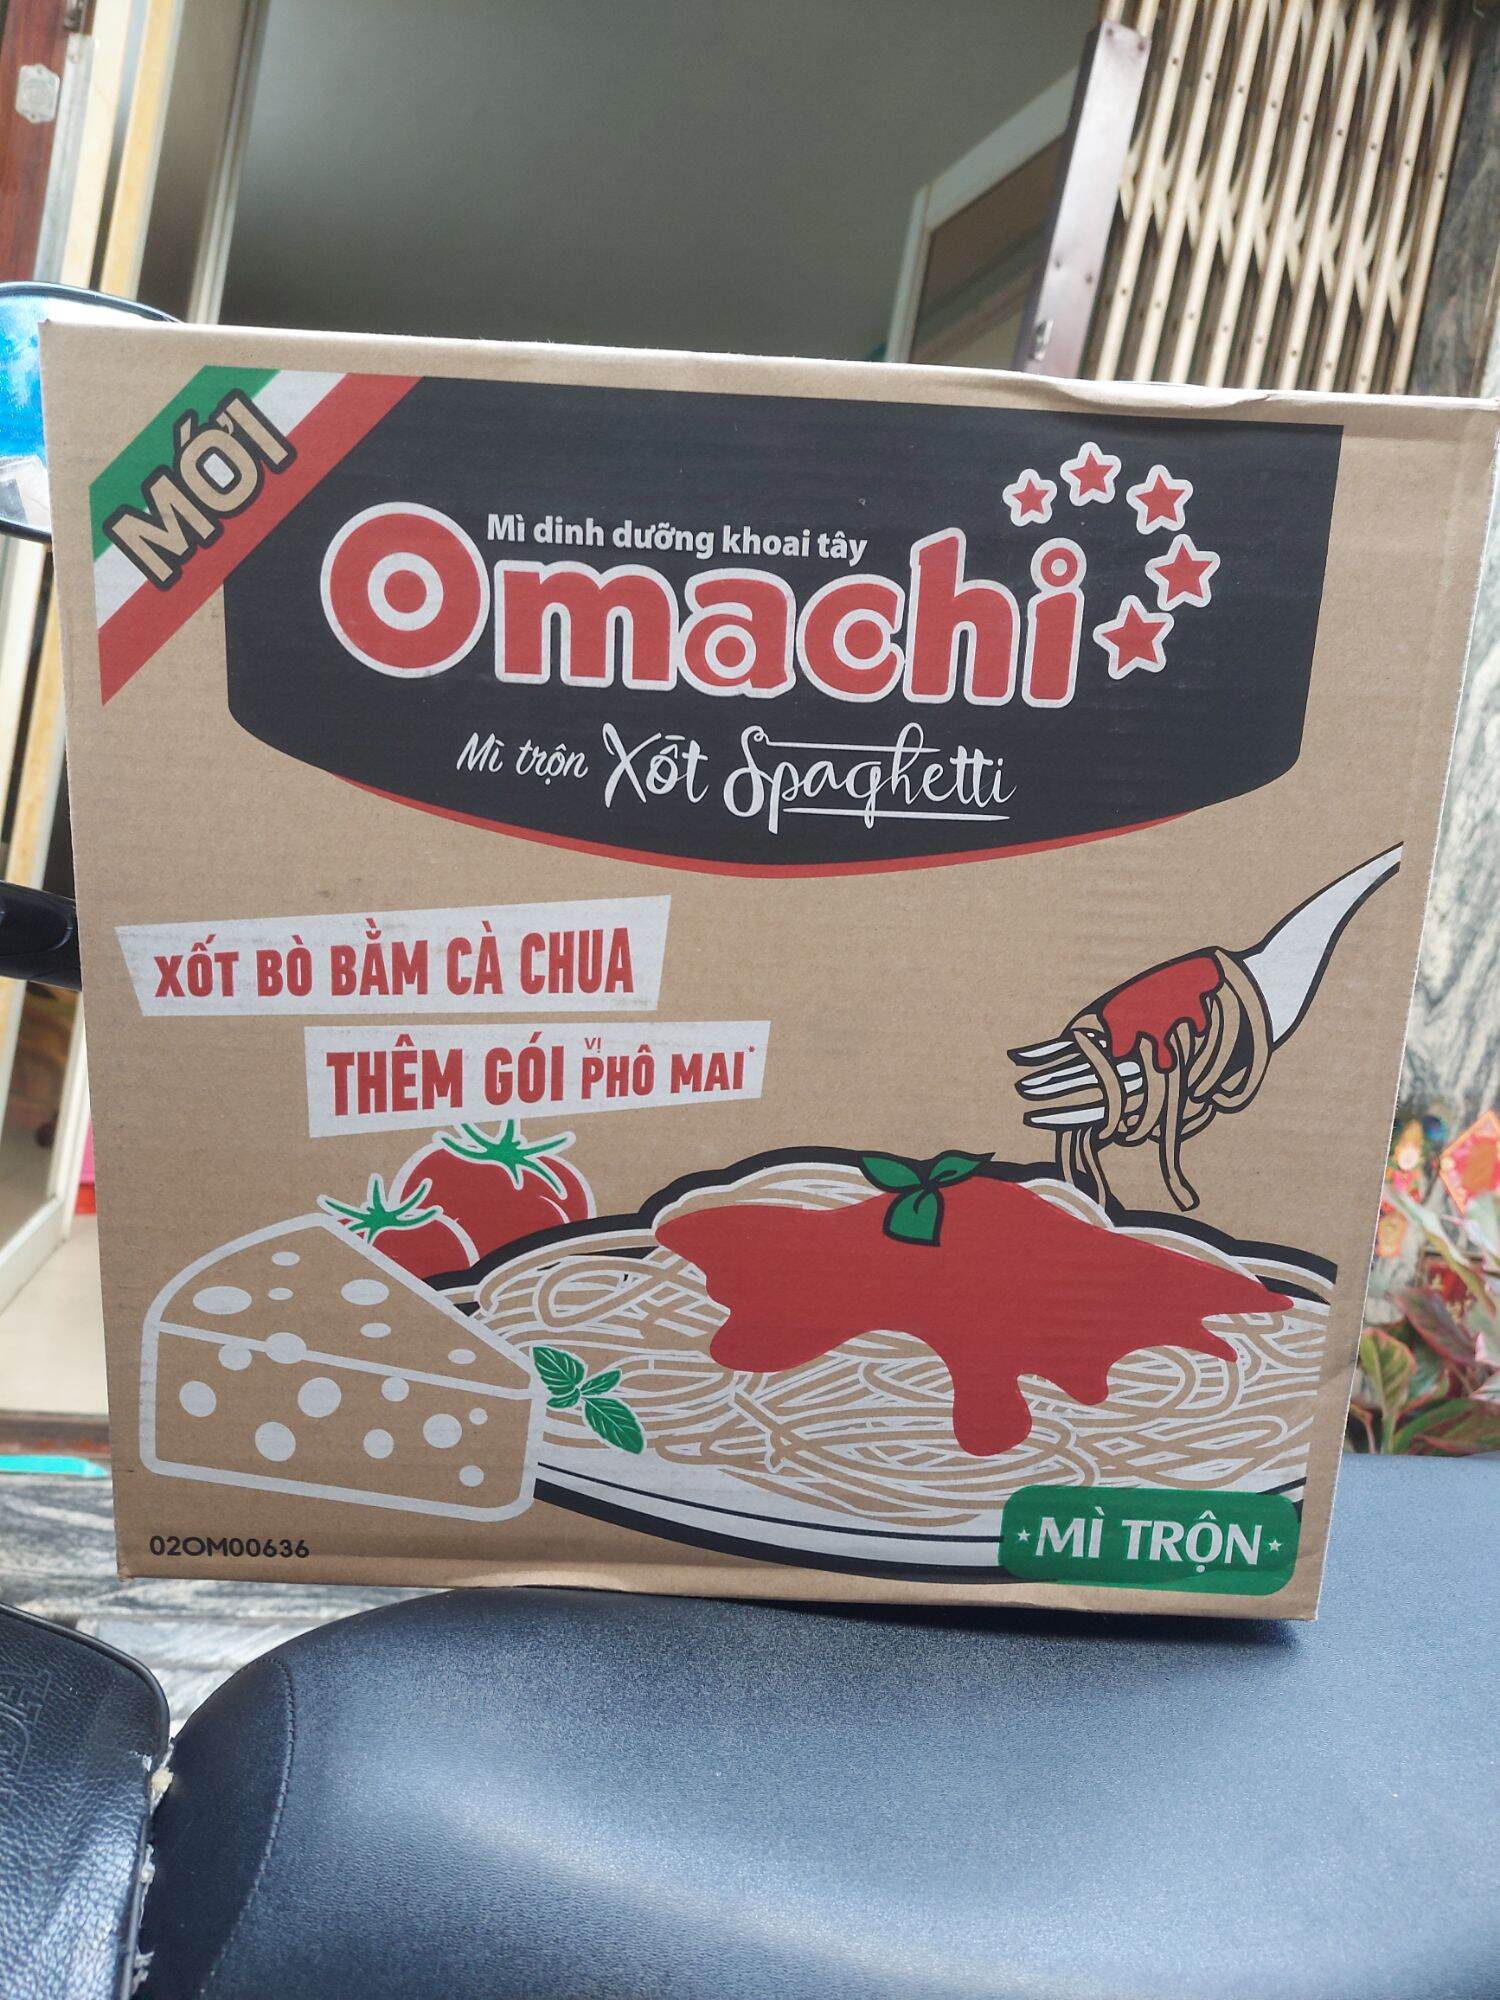 Mì omachi trộn xốt spaghetti thùng 30 goi